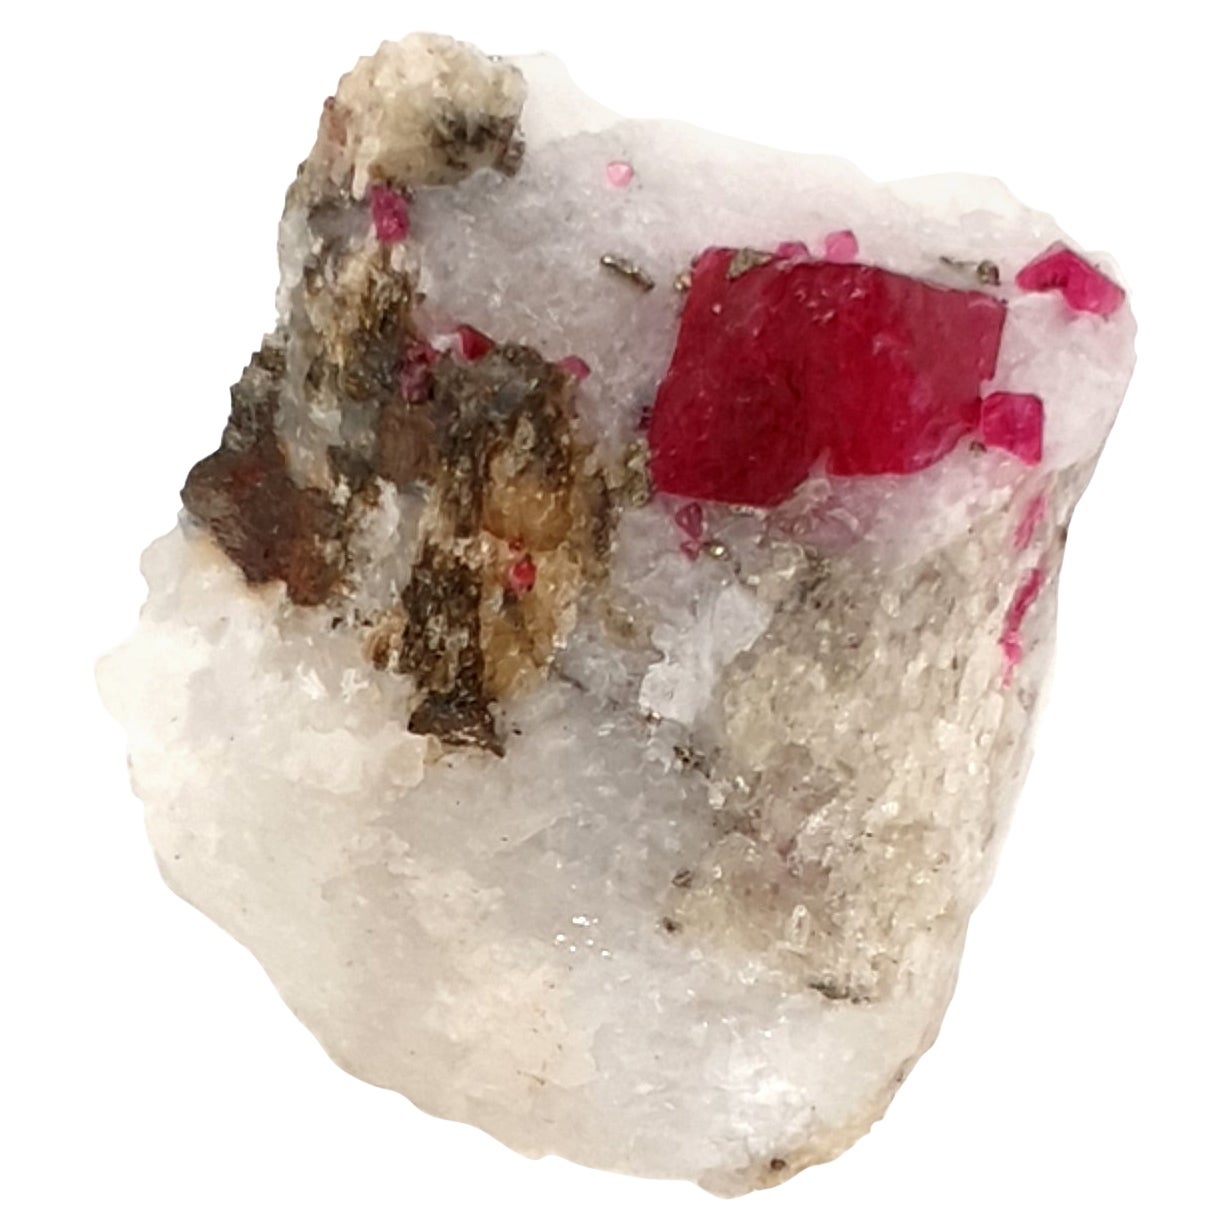 Spinel Crystal in Matrix, Mineral Specimen